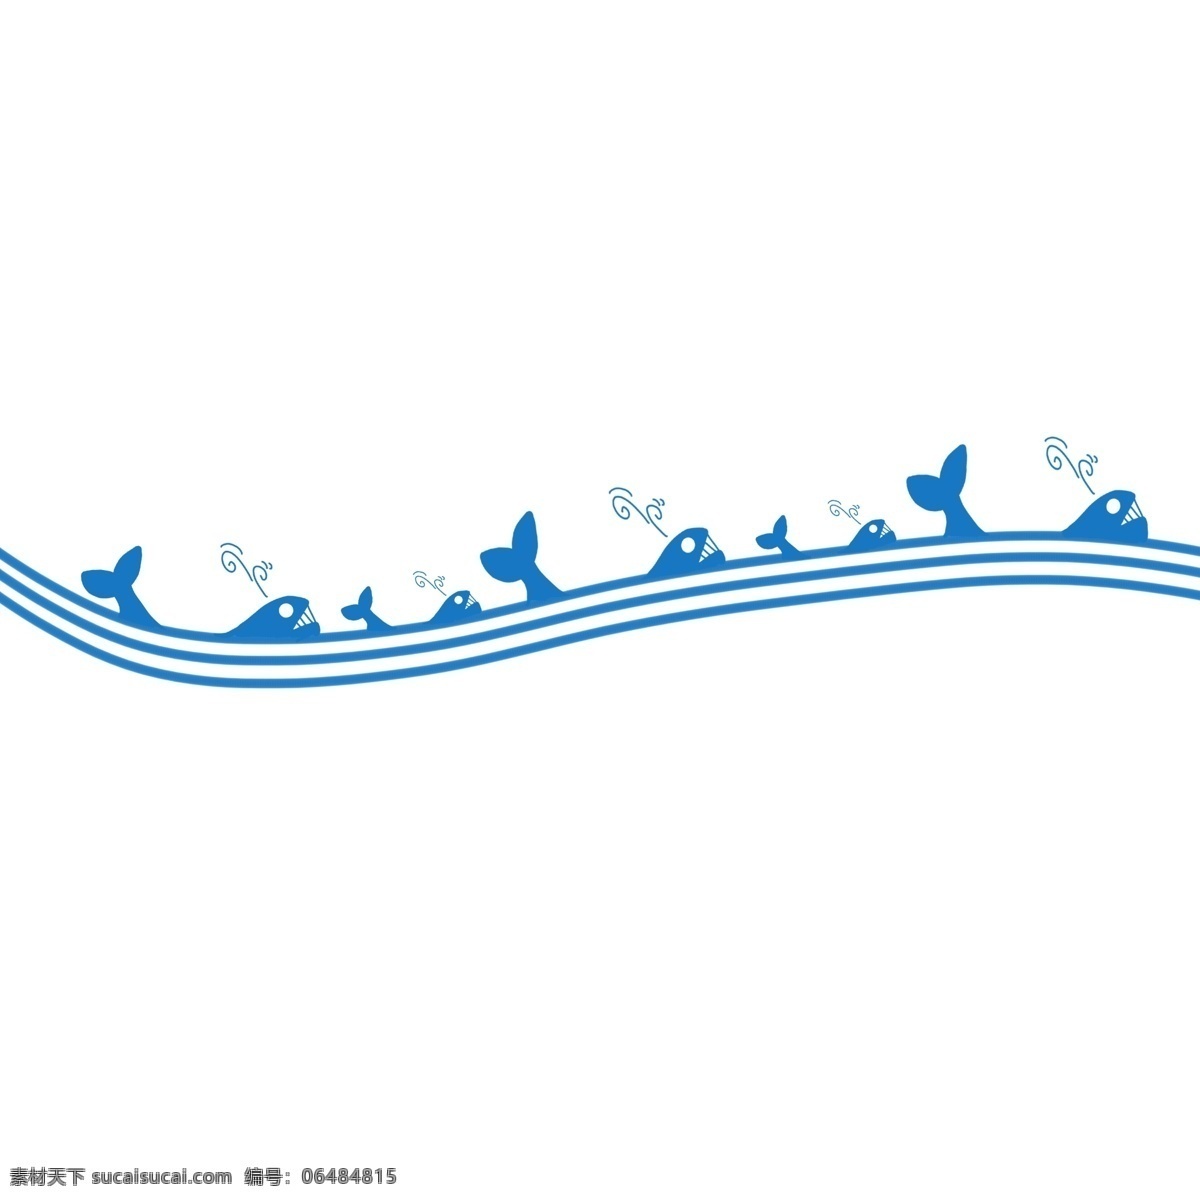 小鱼 分割线 手绘 插画 蓝色的分割线 小鱼分割线 创意分割线 立体分割线 可爱的分割线 动物分割线